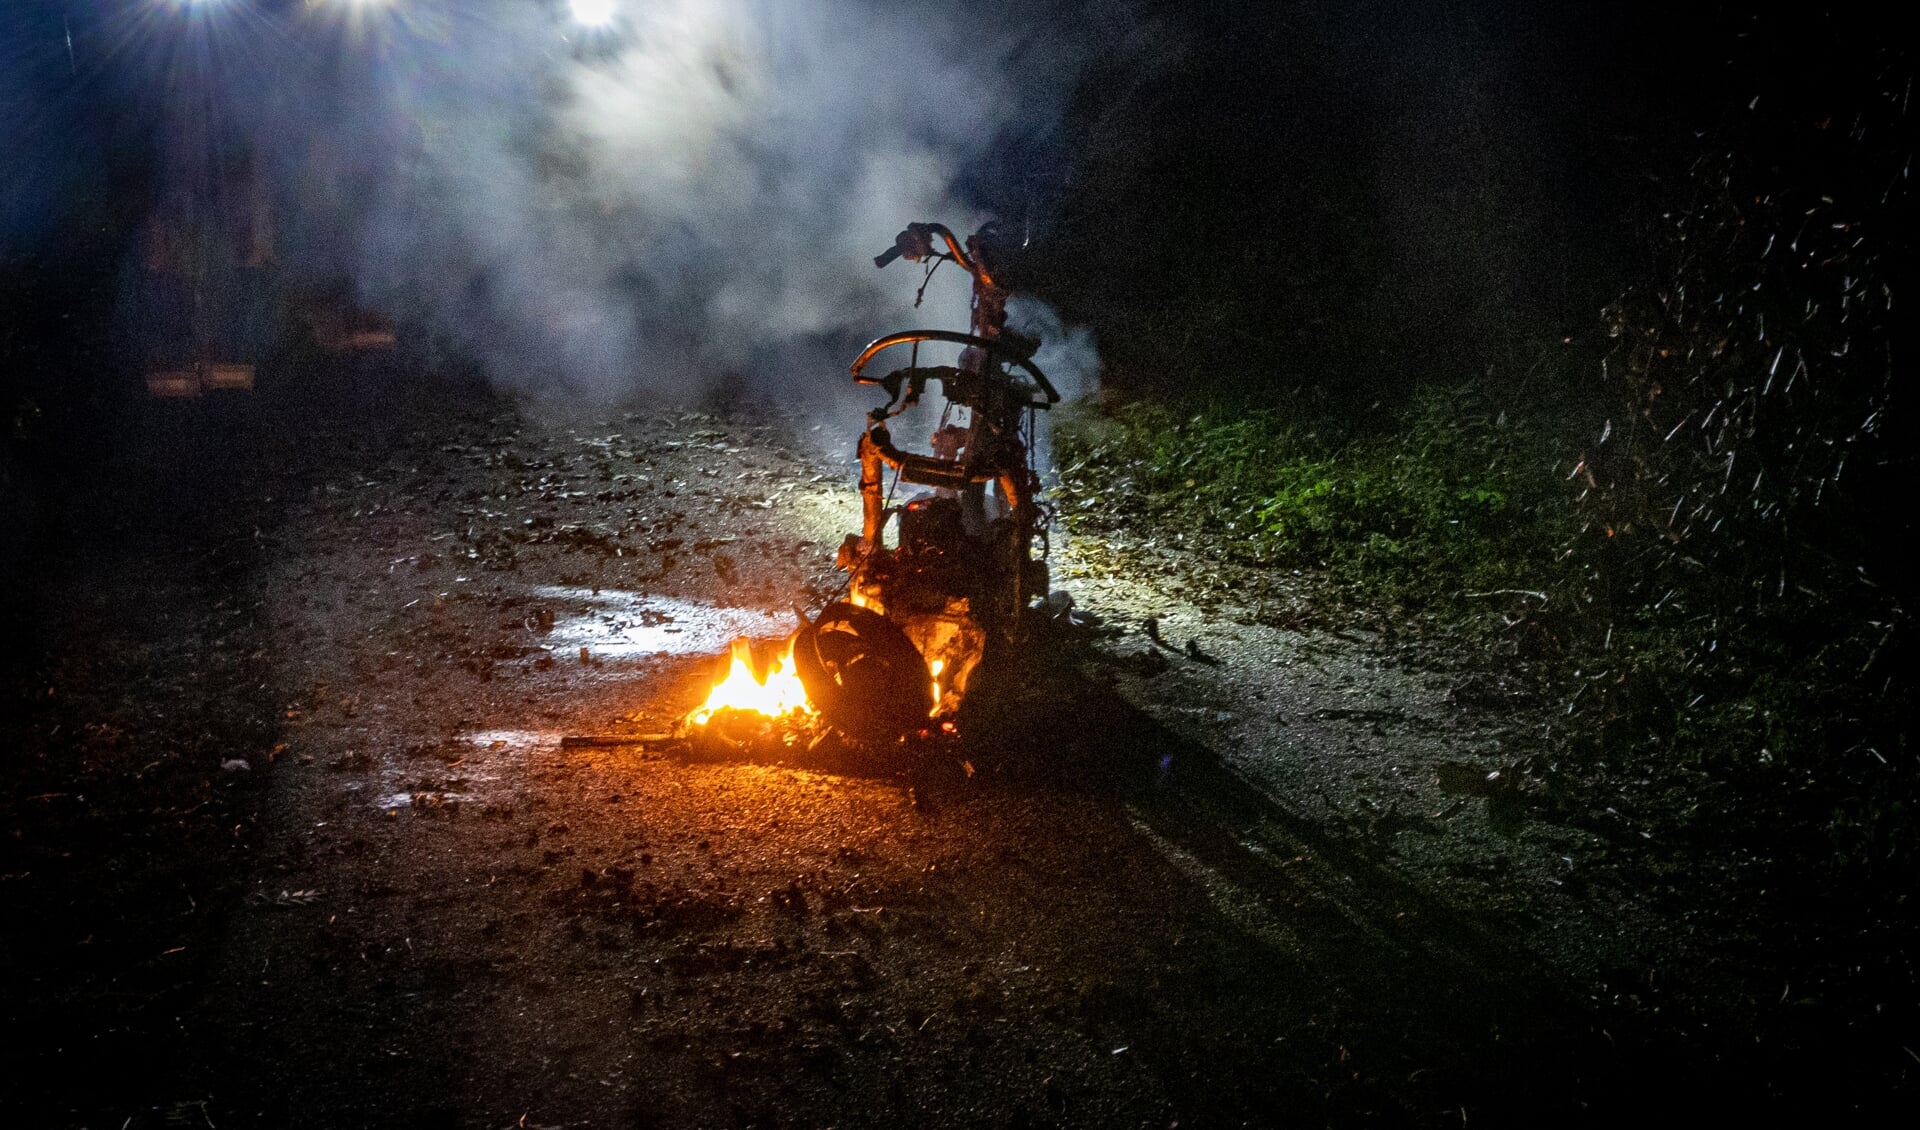 De scooter is volledig in vlammen opgegaan.